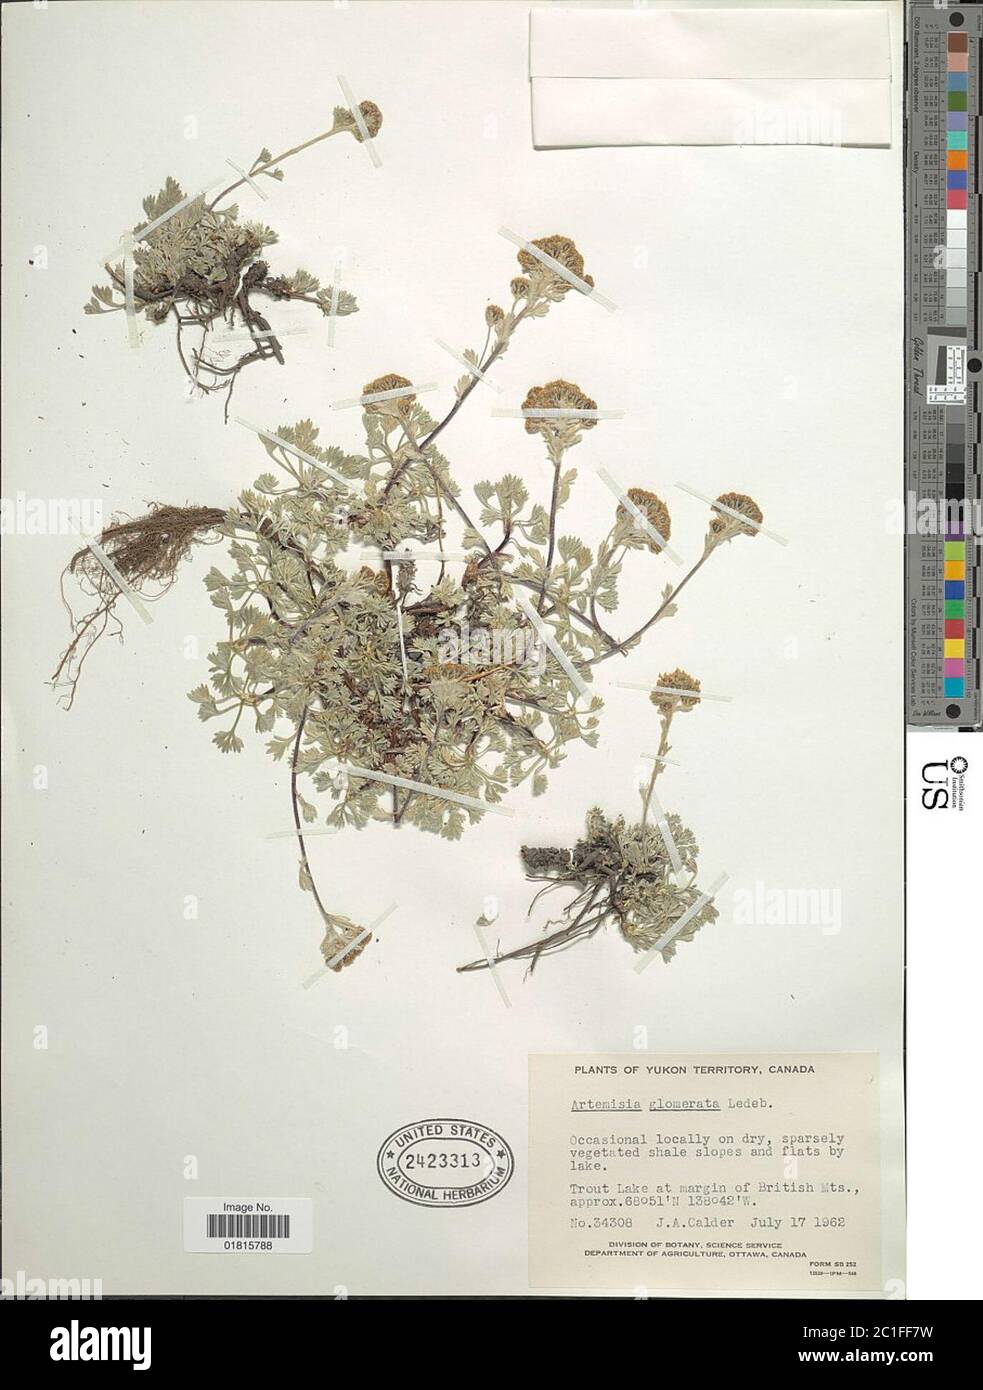 Artemisia glomerata Ledeb Artemisia glomerata Ledeb. Stock Photo